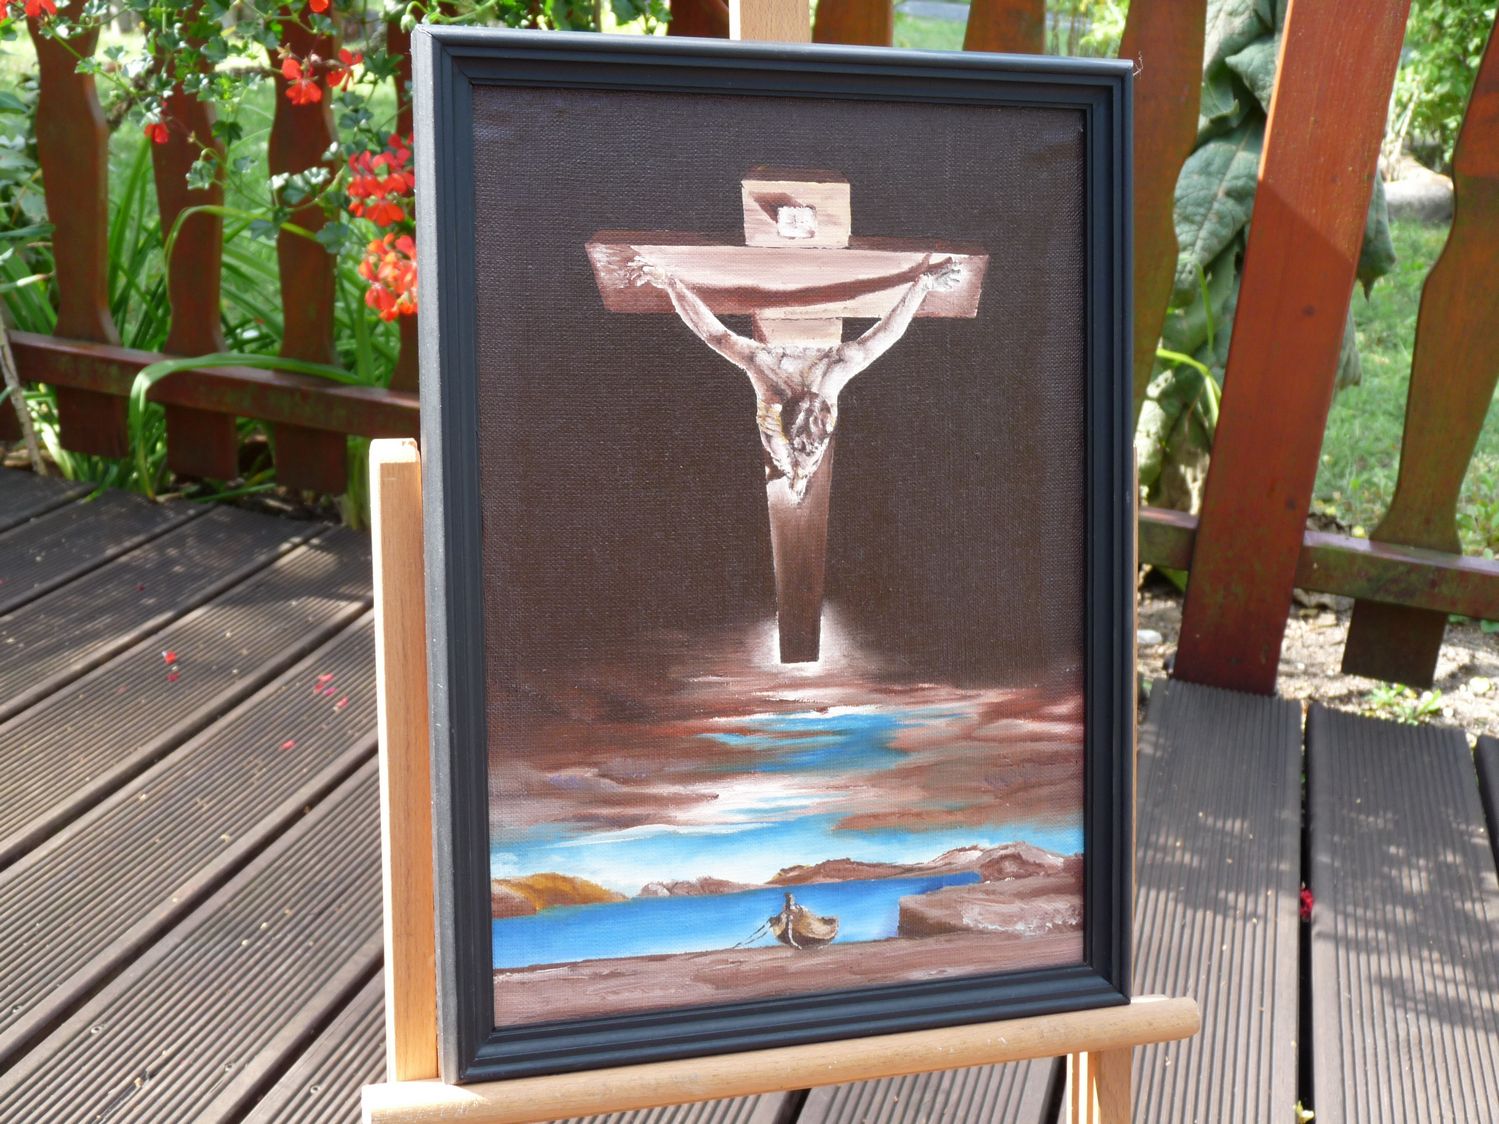 Chrystus Świętego Jana od Krzyża - Salvador Dali - Kopia Obrazu.jpg